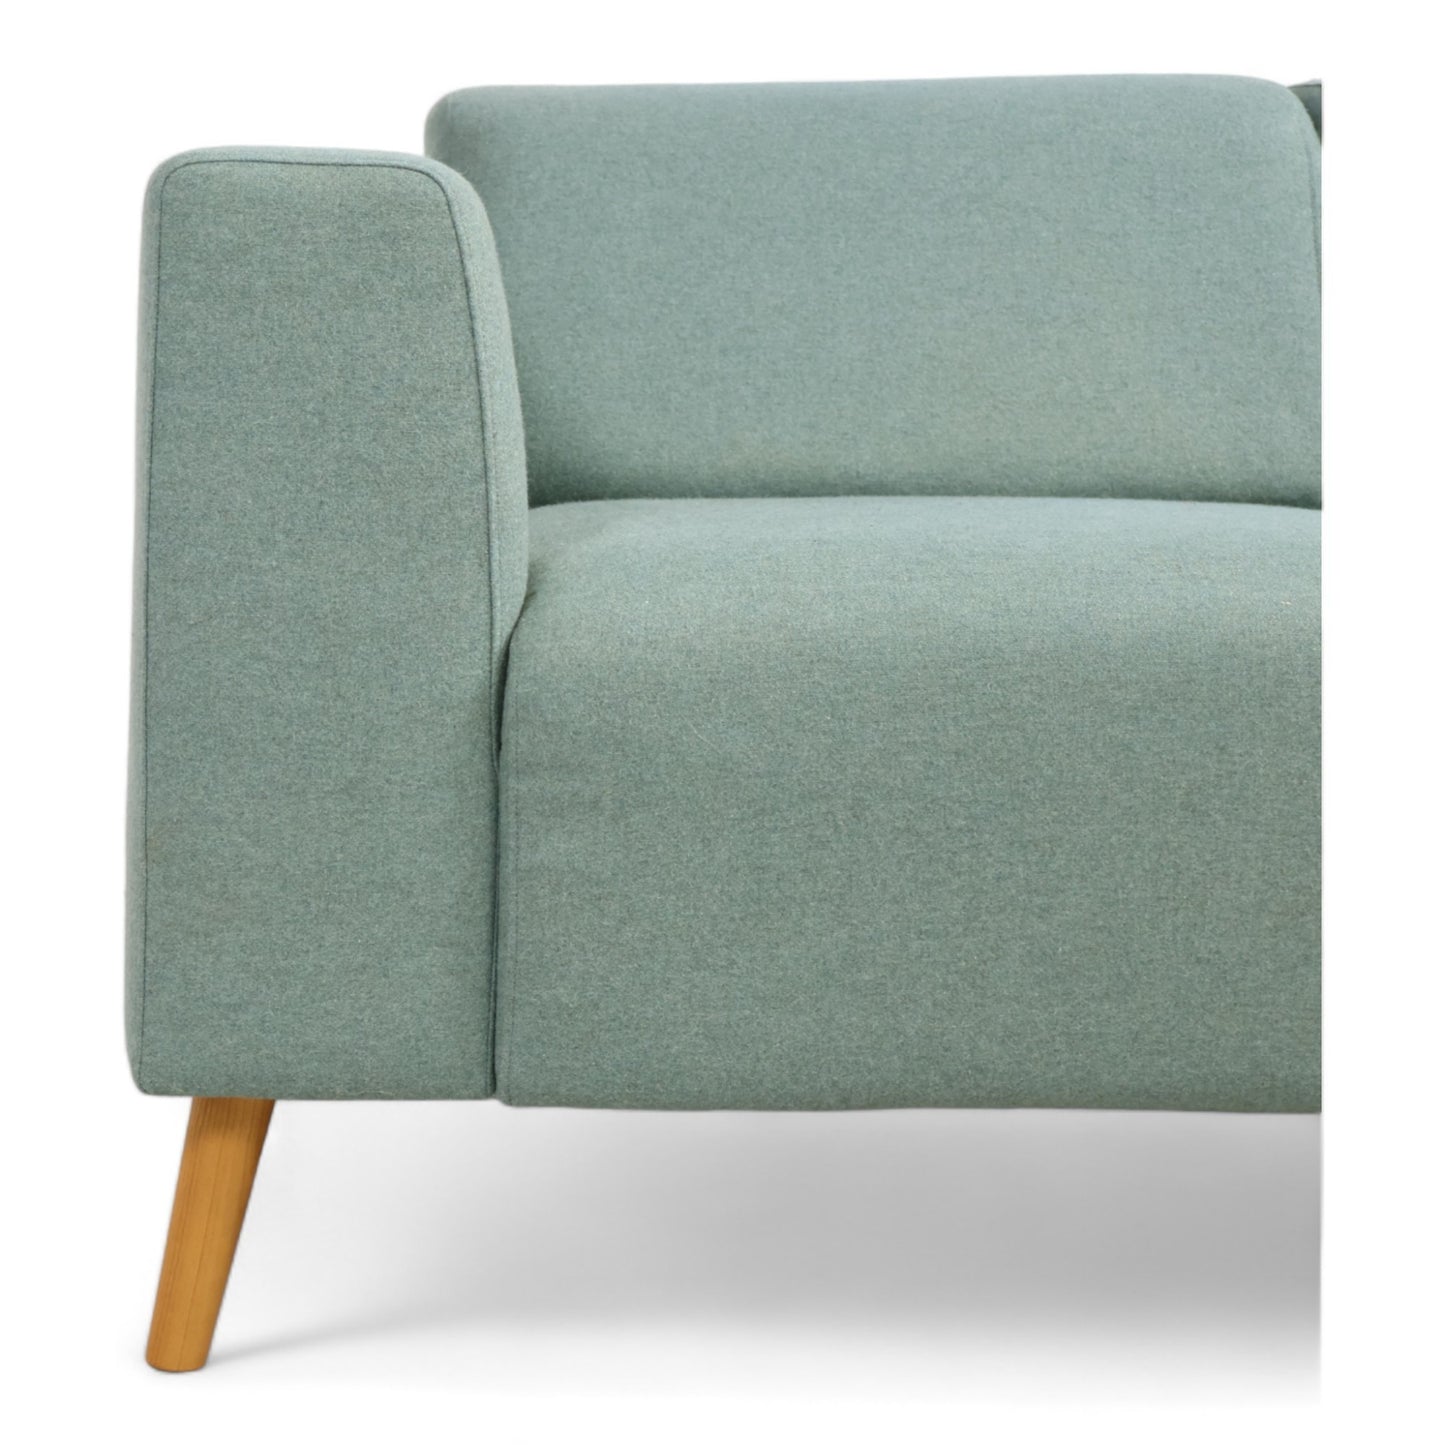 Nyrenset | Mint grønn 2-seter sofa i ullstoff